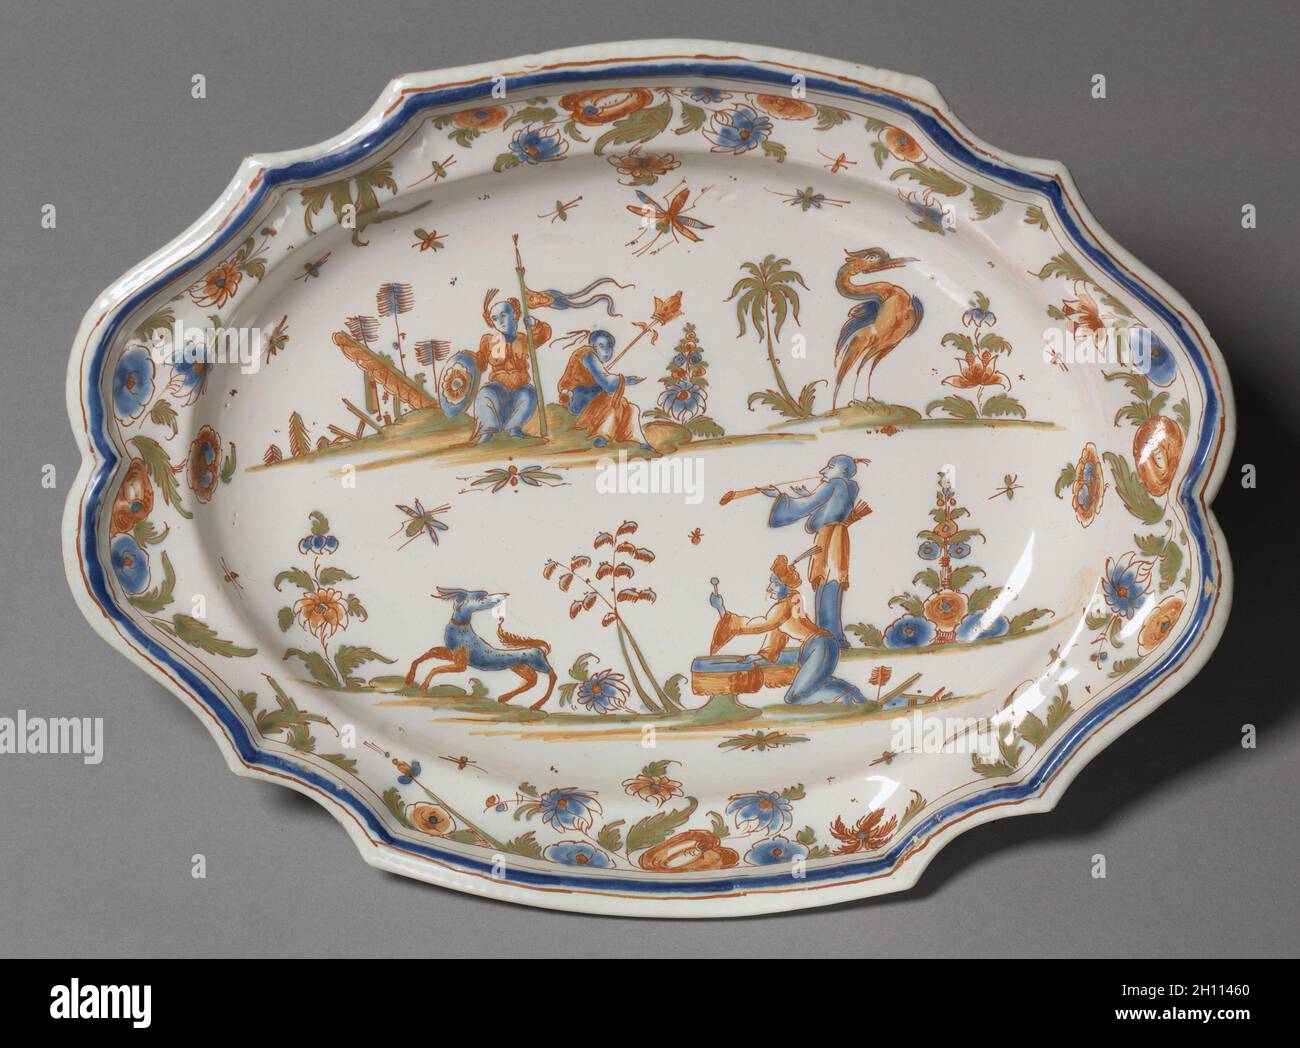 Plato, c. 1740. Francia, Lyon, el siglo de mid-18th. Tin- eathenware acristalado (de loza) con decoración de esmalte; total: 36,2 x 27,3 cm (14 1/4 x 10 3/4 pulg.). Foto de stock